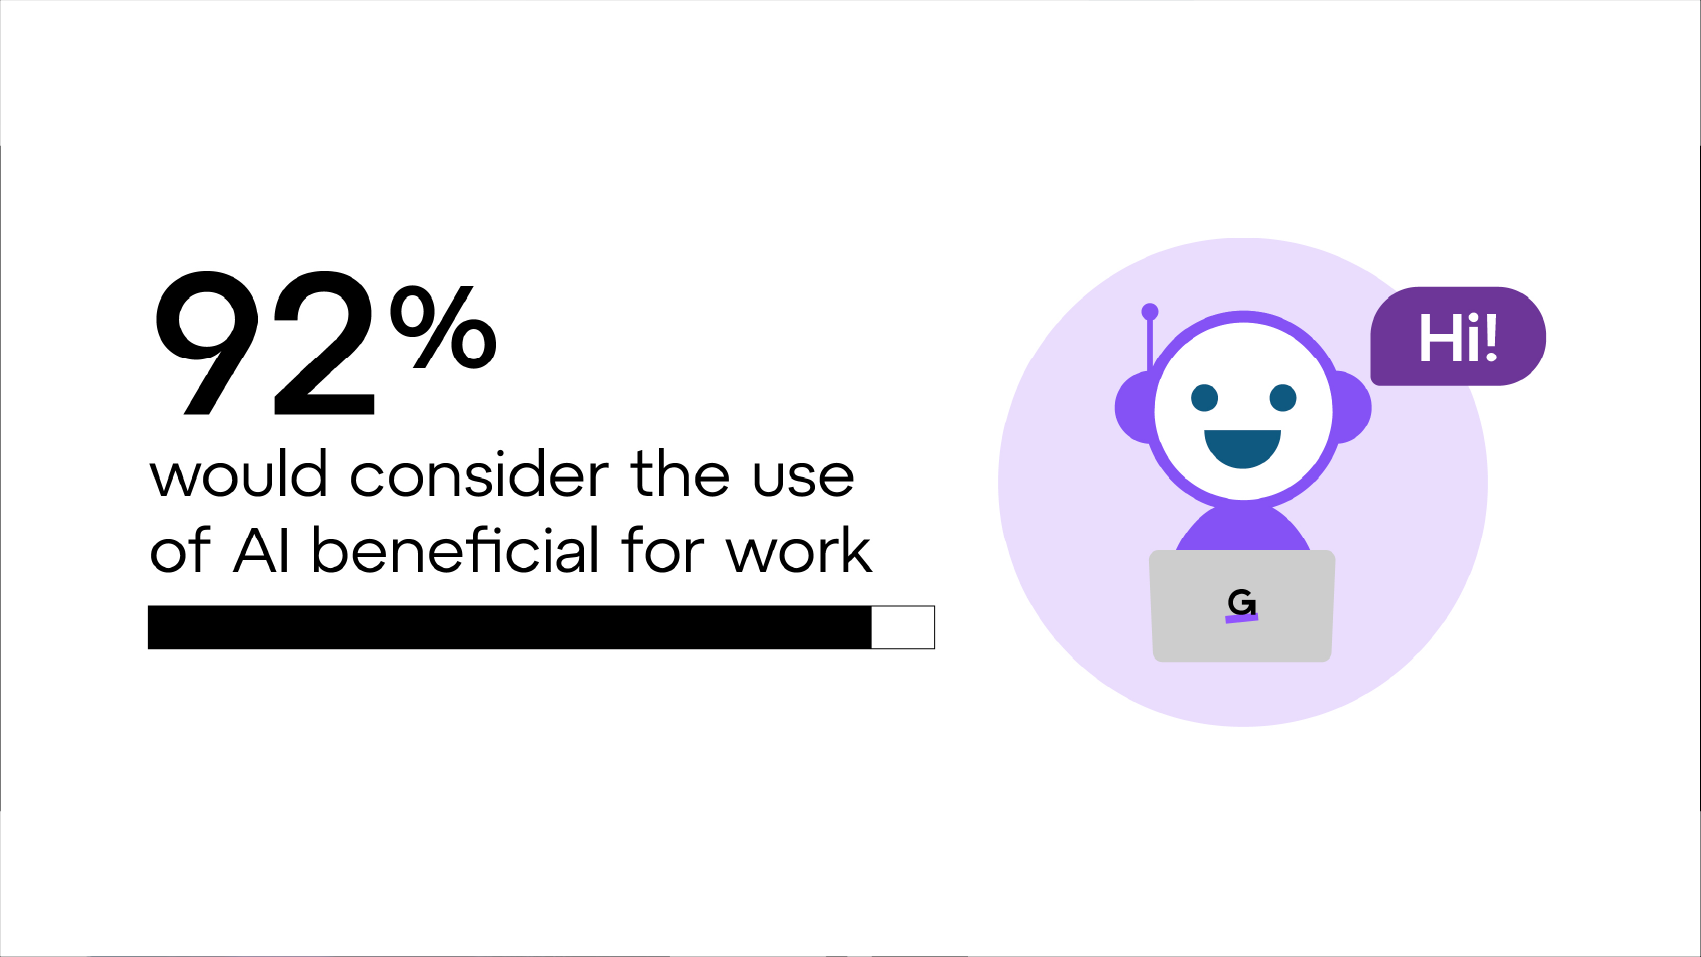 Il 92% riterrebbe l'uso dell'IA vantaggioso per il lavoro.